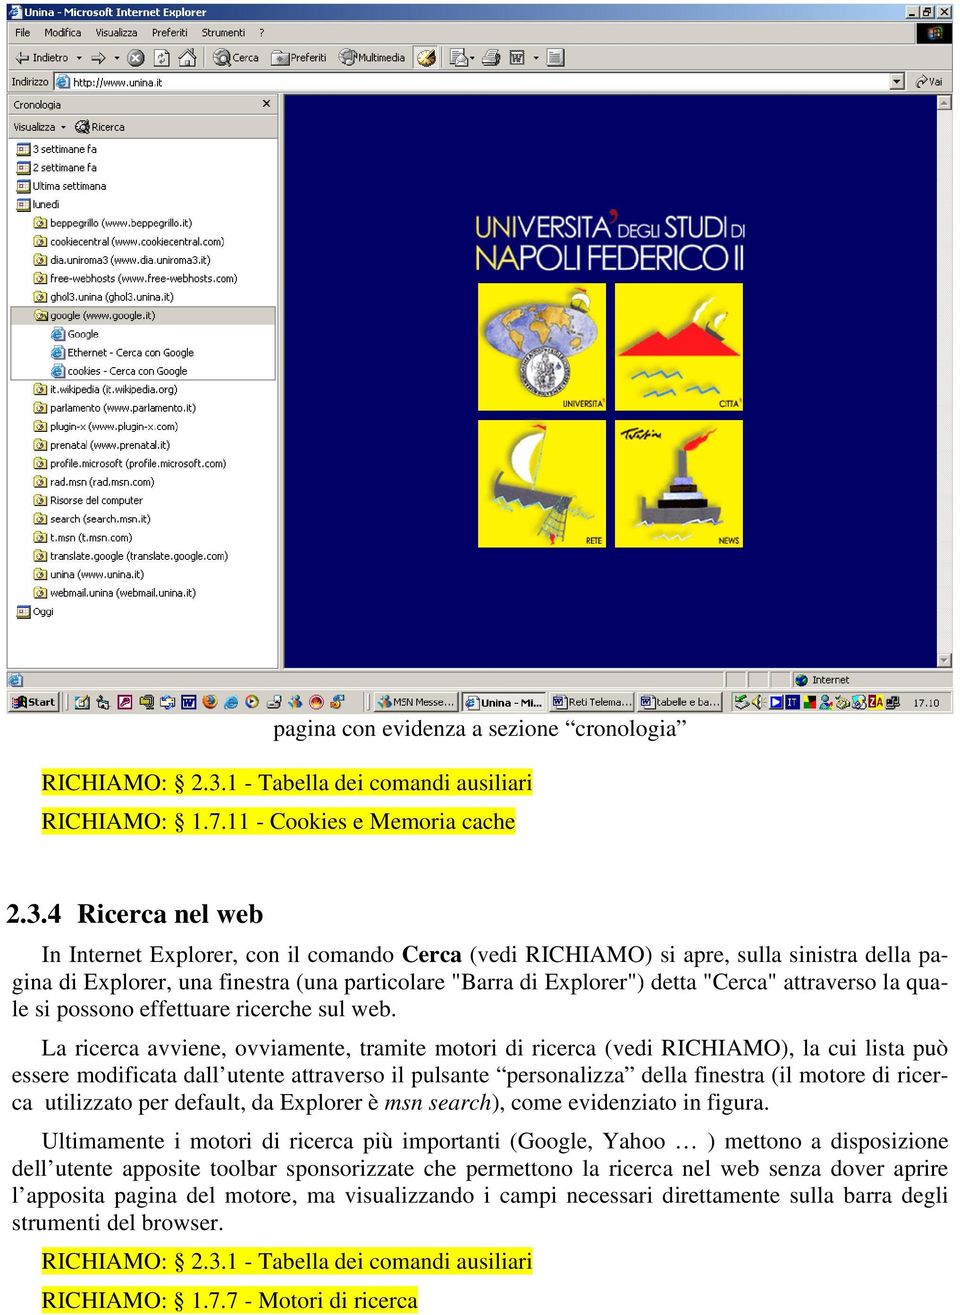 4 Ricerca nel web In Internet Explorer, con il comando Cerca (vedi RICHIAMO) si apre, sulla sinistra della pagina di Explorer, una finestra (una particolare "Barra di Explorer") detta "Cerca"